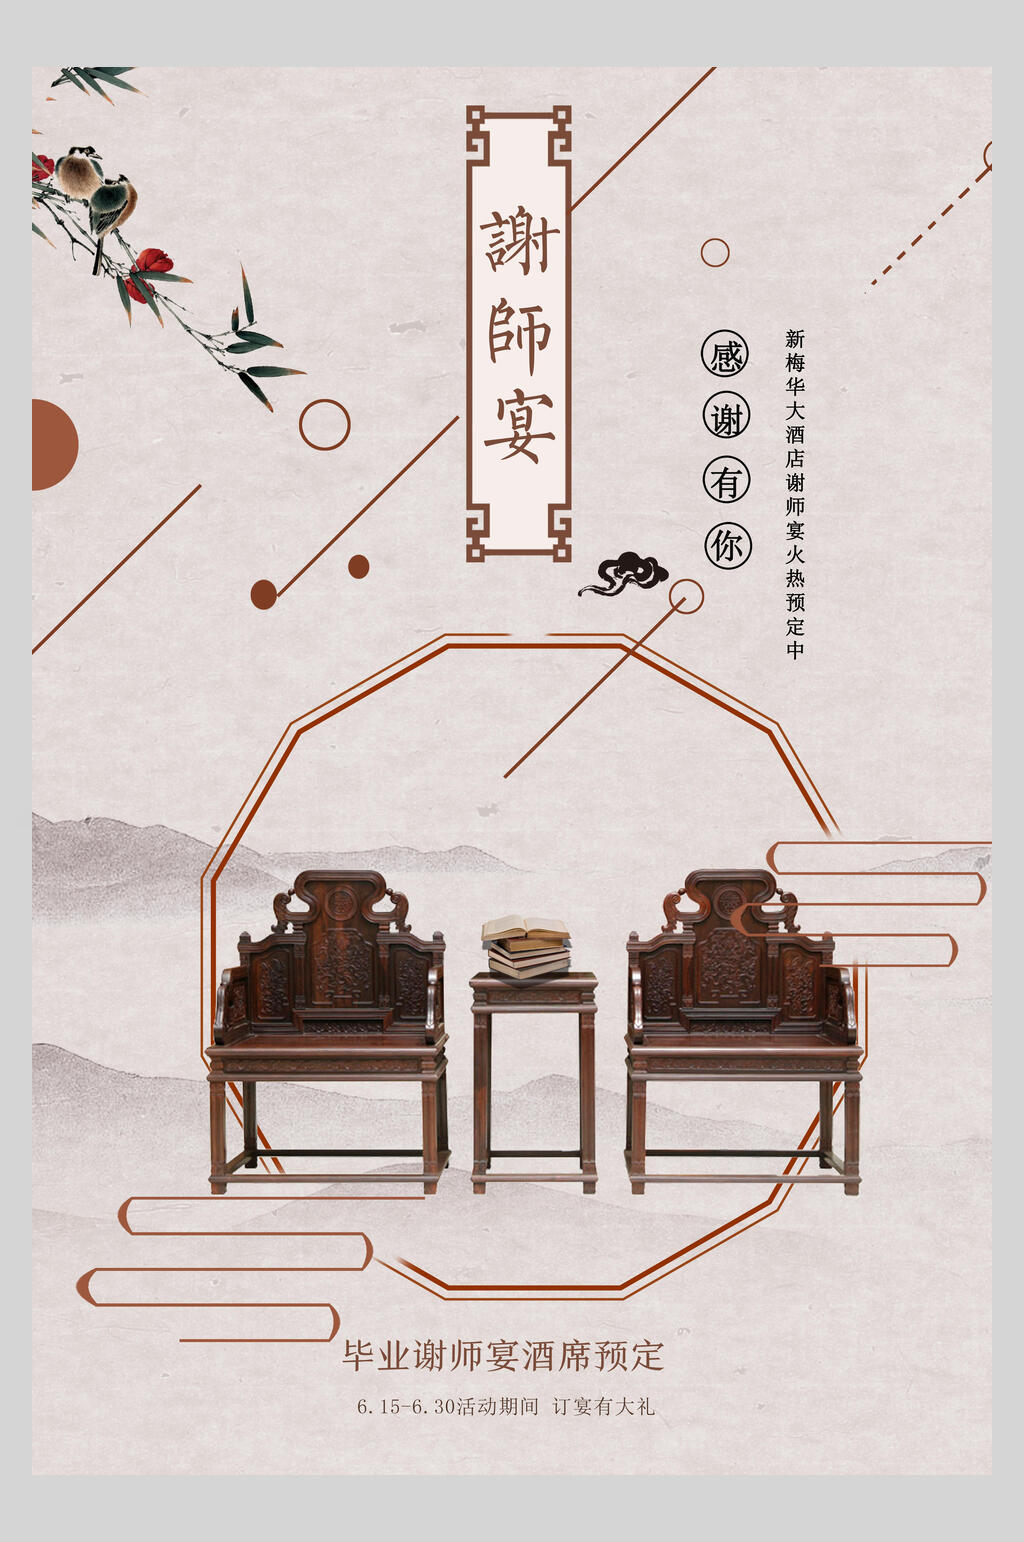 椅子中国风创意海报素材